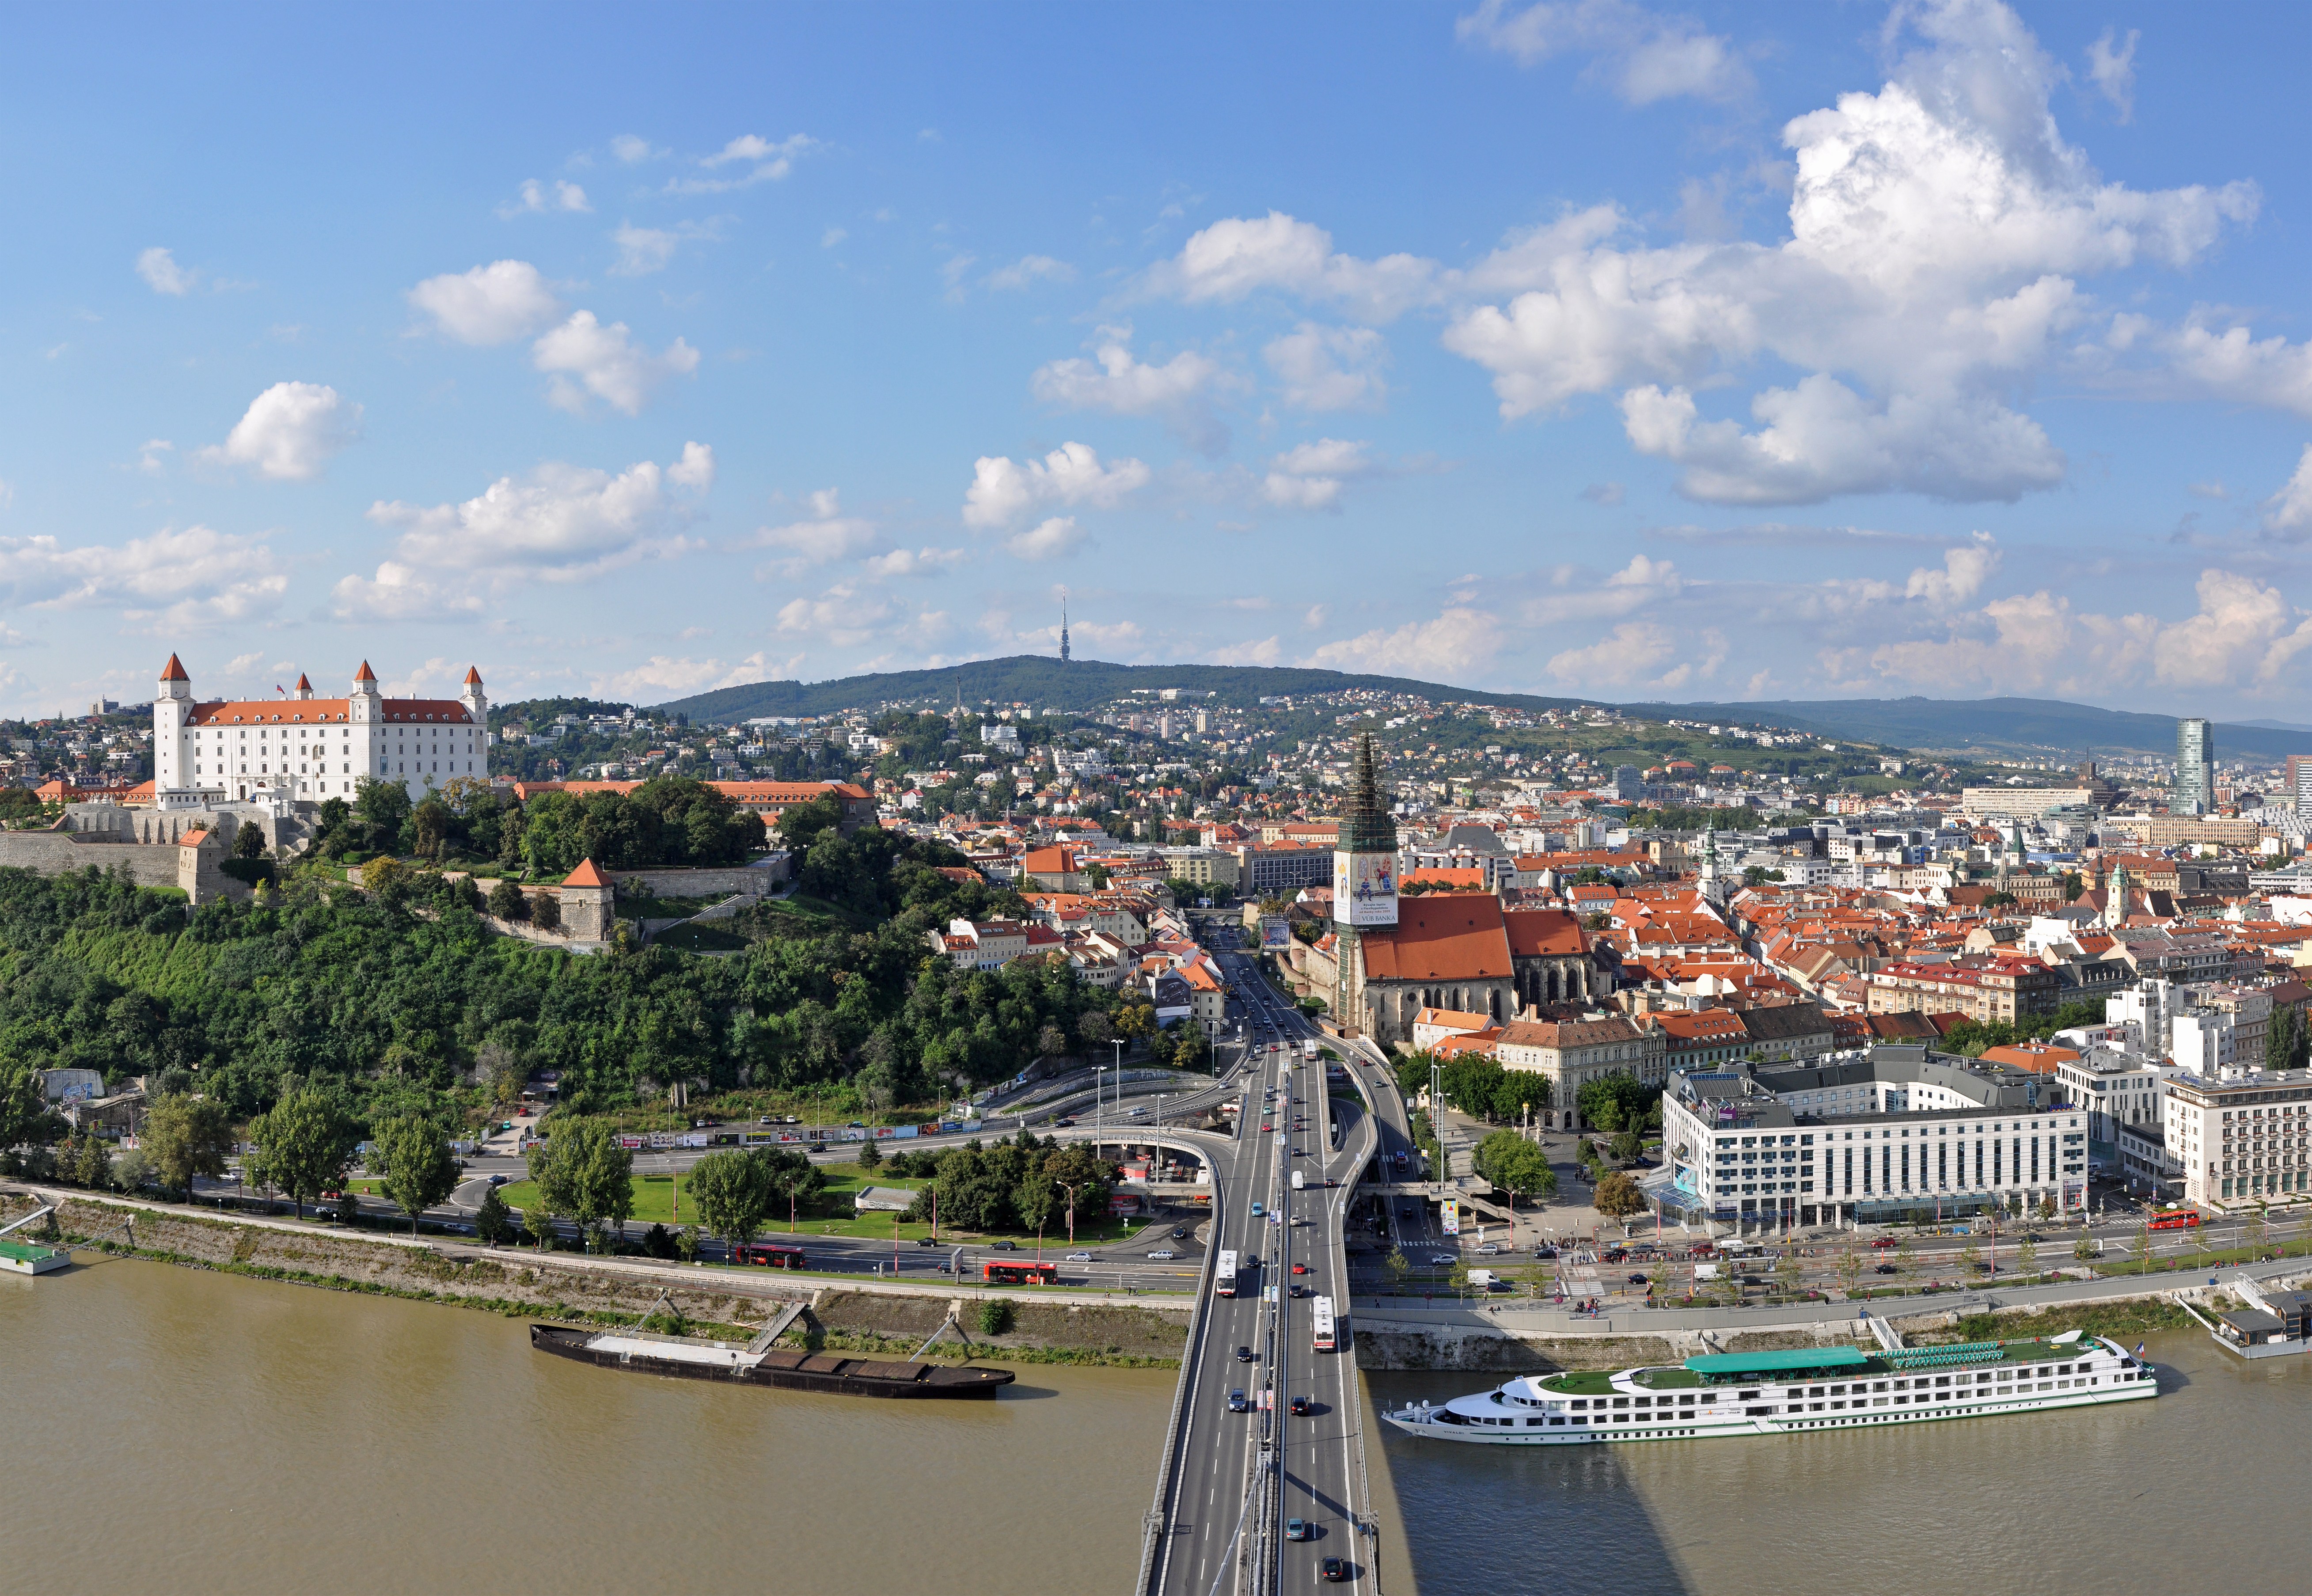 Bratislava in One Day